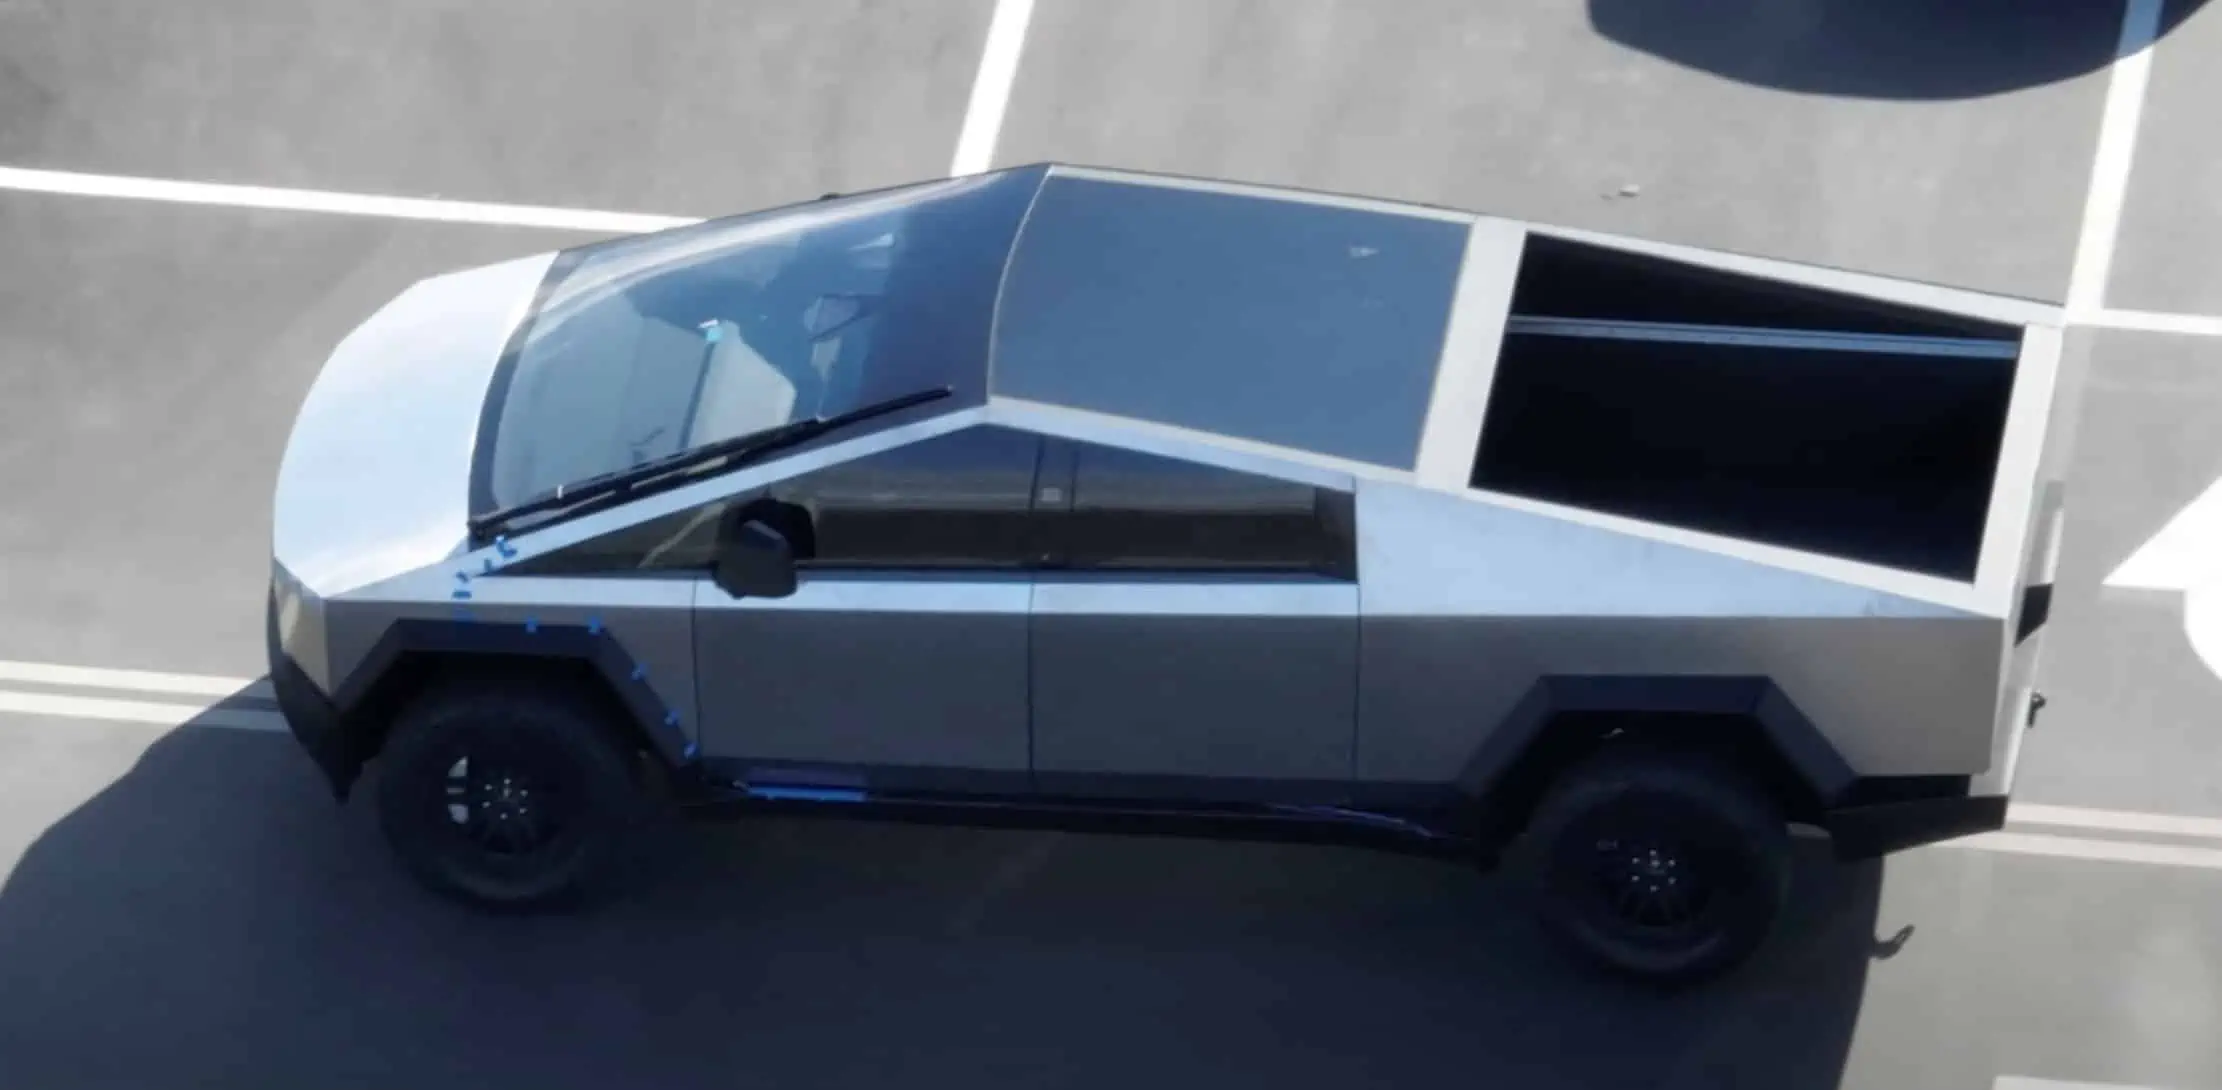 Нов прототип на Tesla CyberTruck, пореалистичен, помалко готин (видео